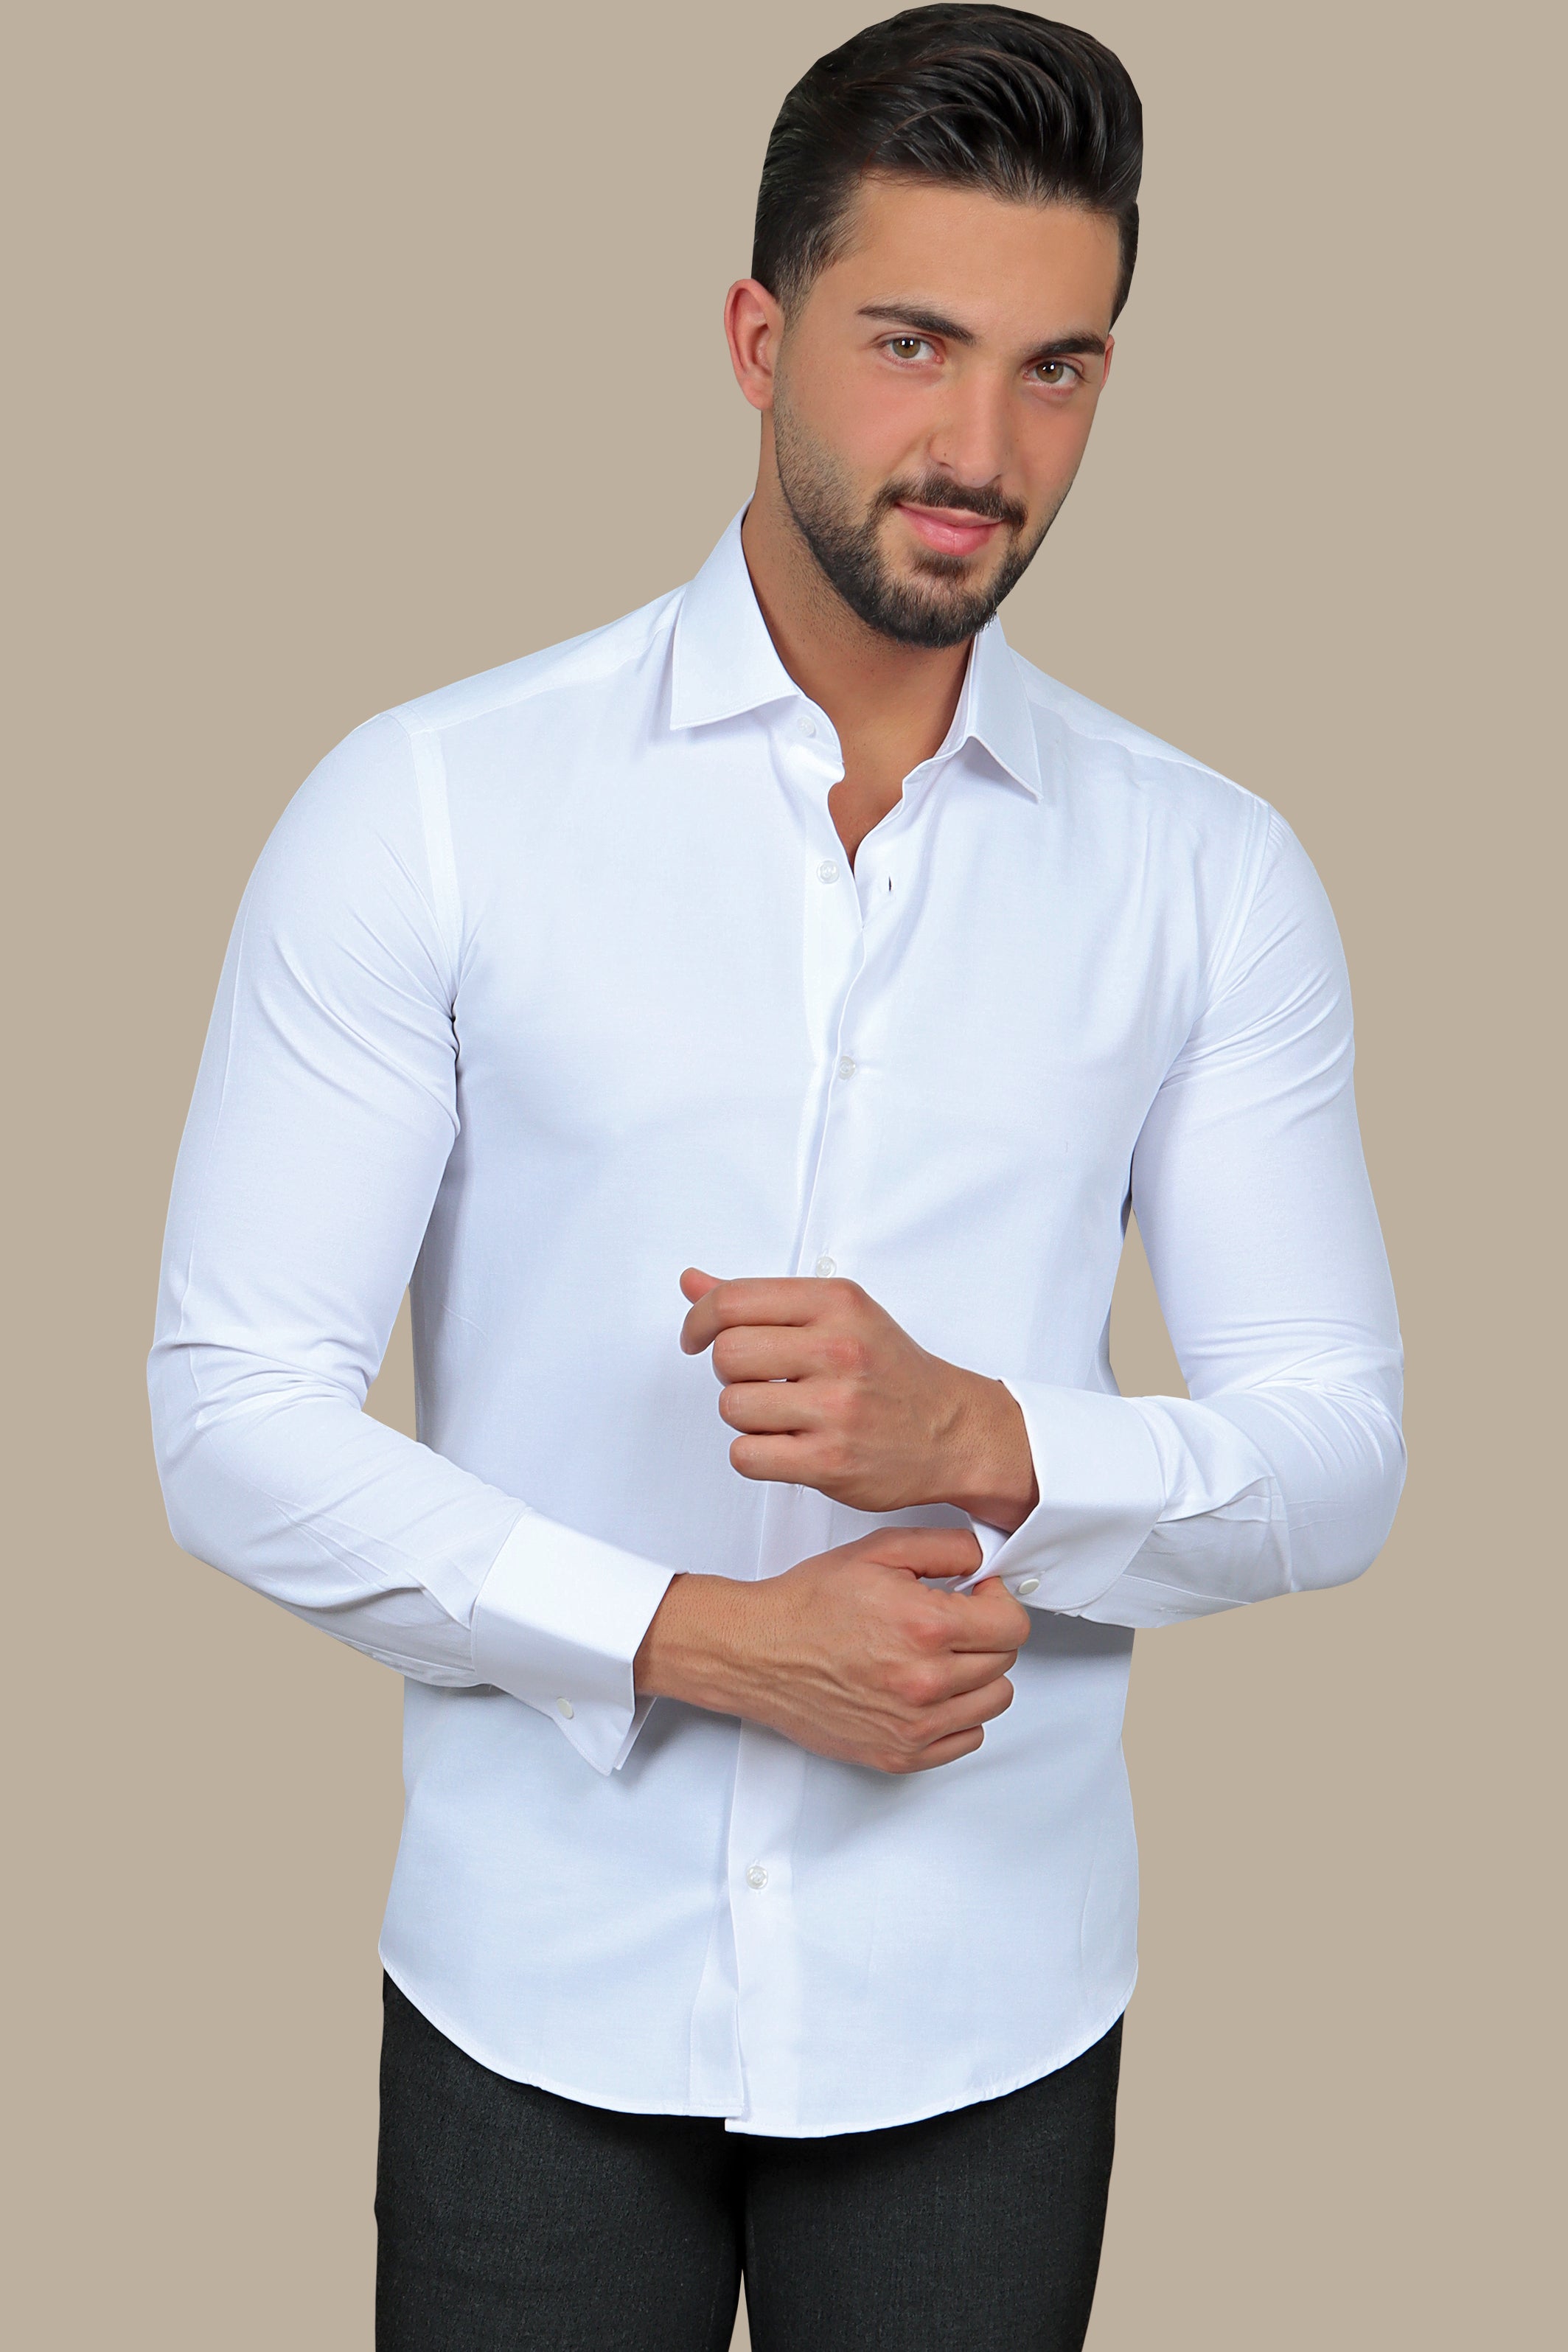 Shirt Cuff Plain | White